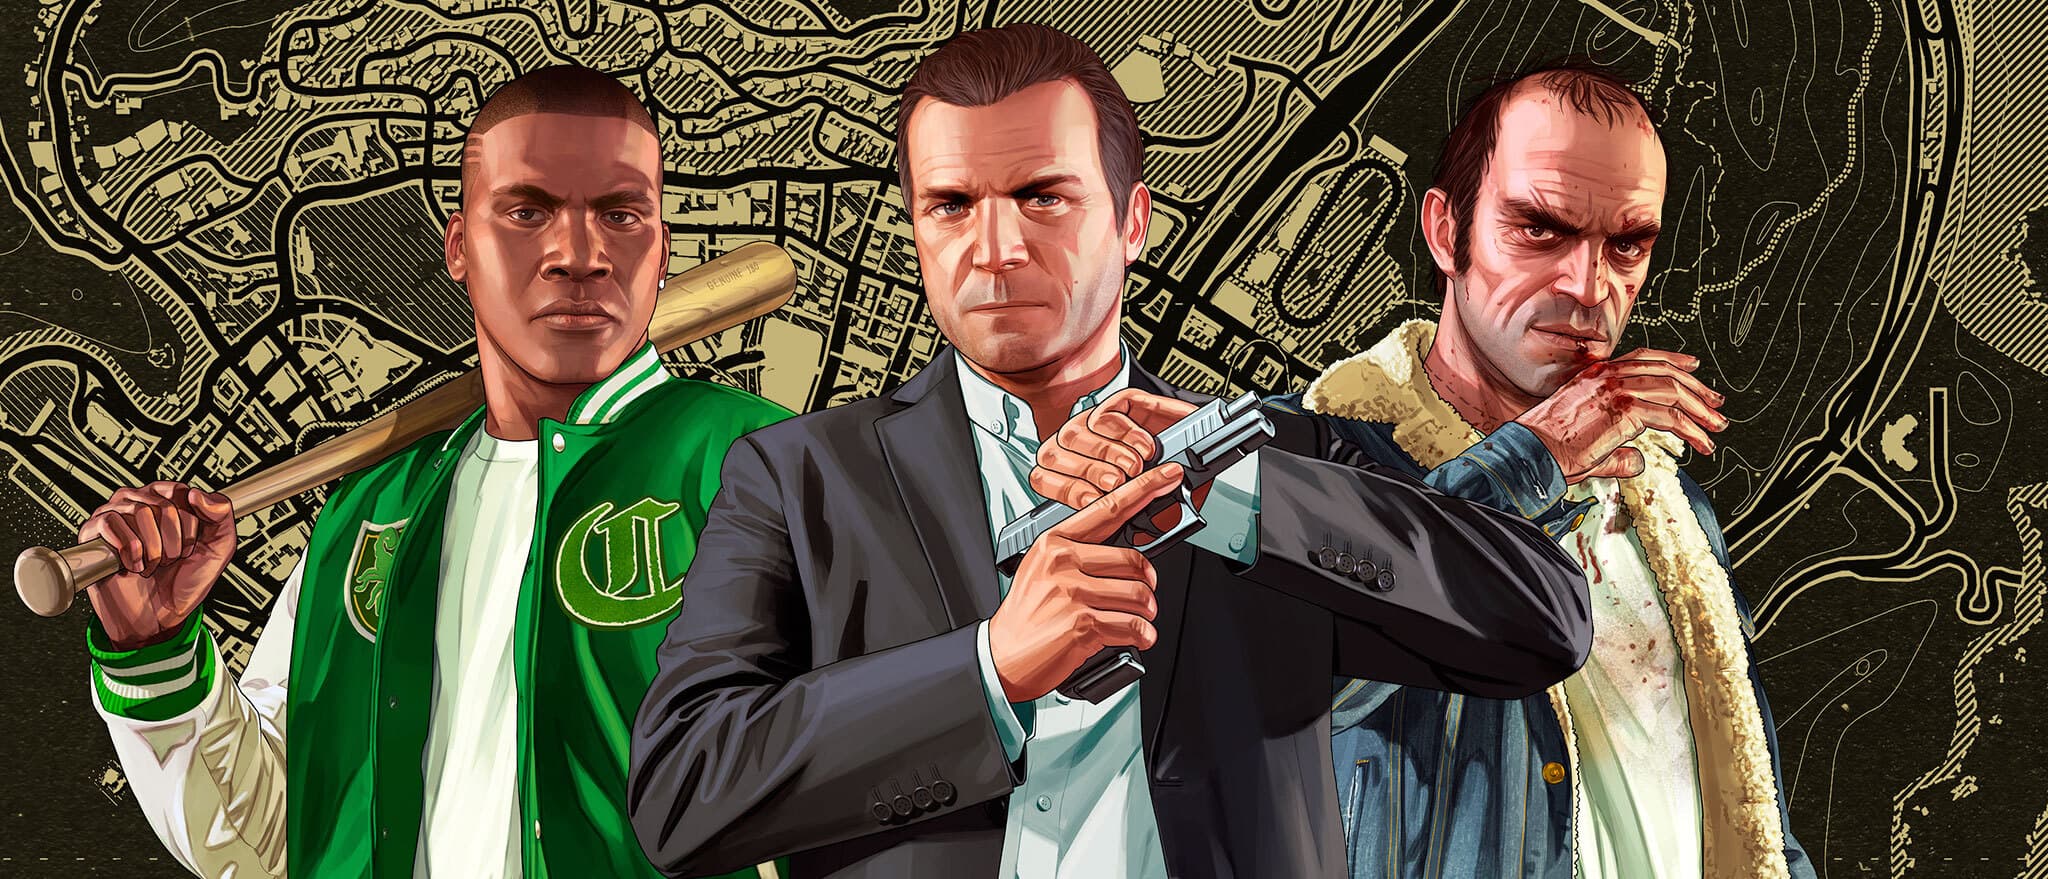 Grand Theft Auto V (GTA 5) - Xbox 360 - Interactive Gamestore